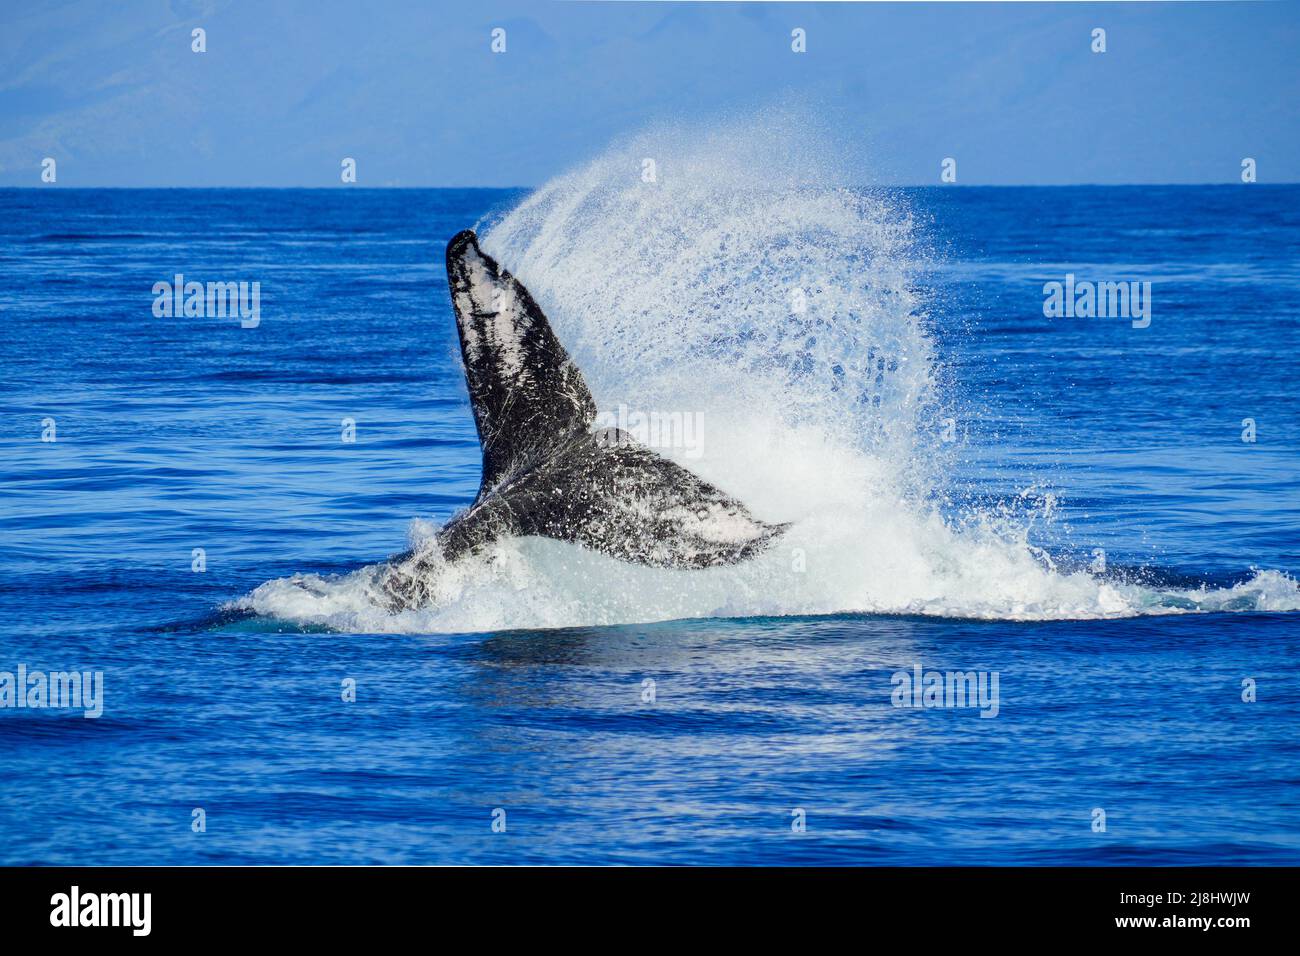 Queue d'une baleine à bosse qui éclabousse de l'eau à grande vitesse pendant un jeu en famille dans les eaux entre Maui et les îles Lanai à Hawaï pendant l'hiver W Banque D'Images